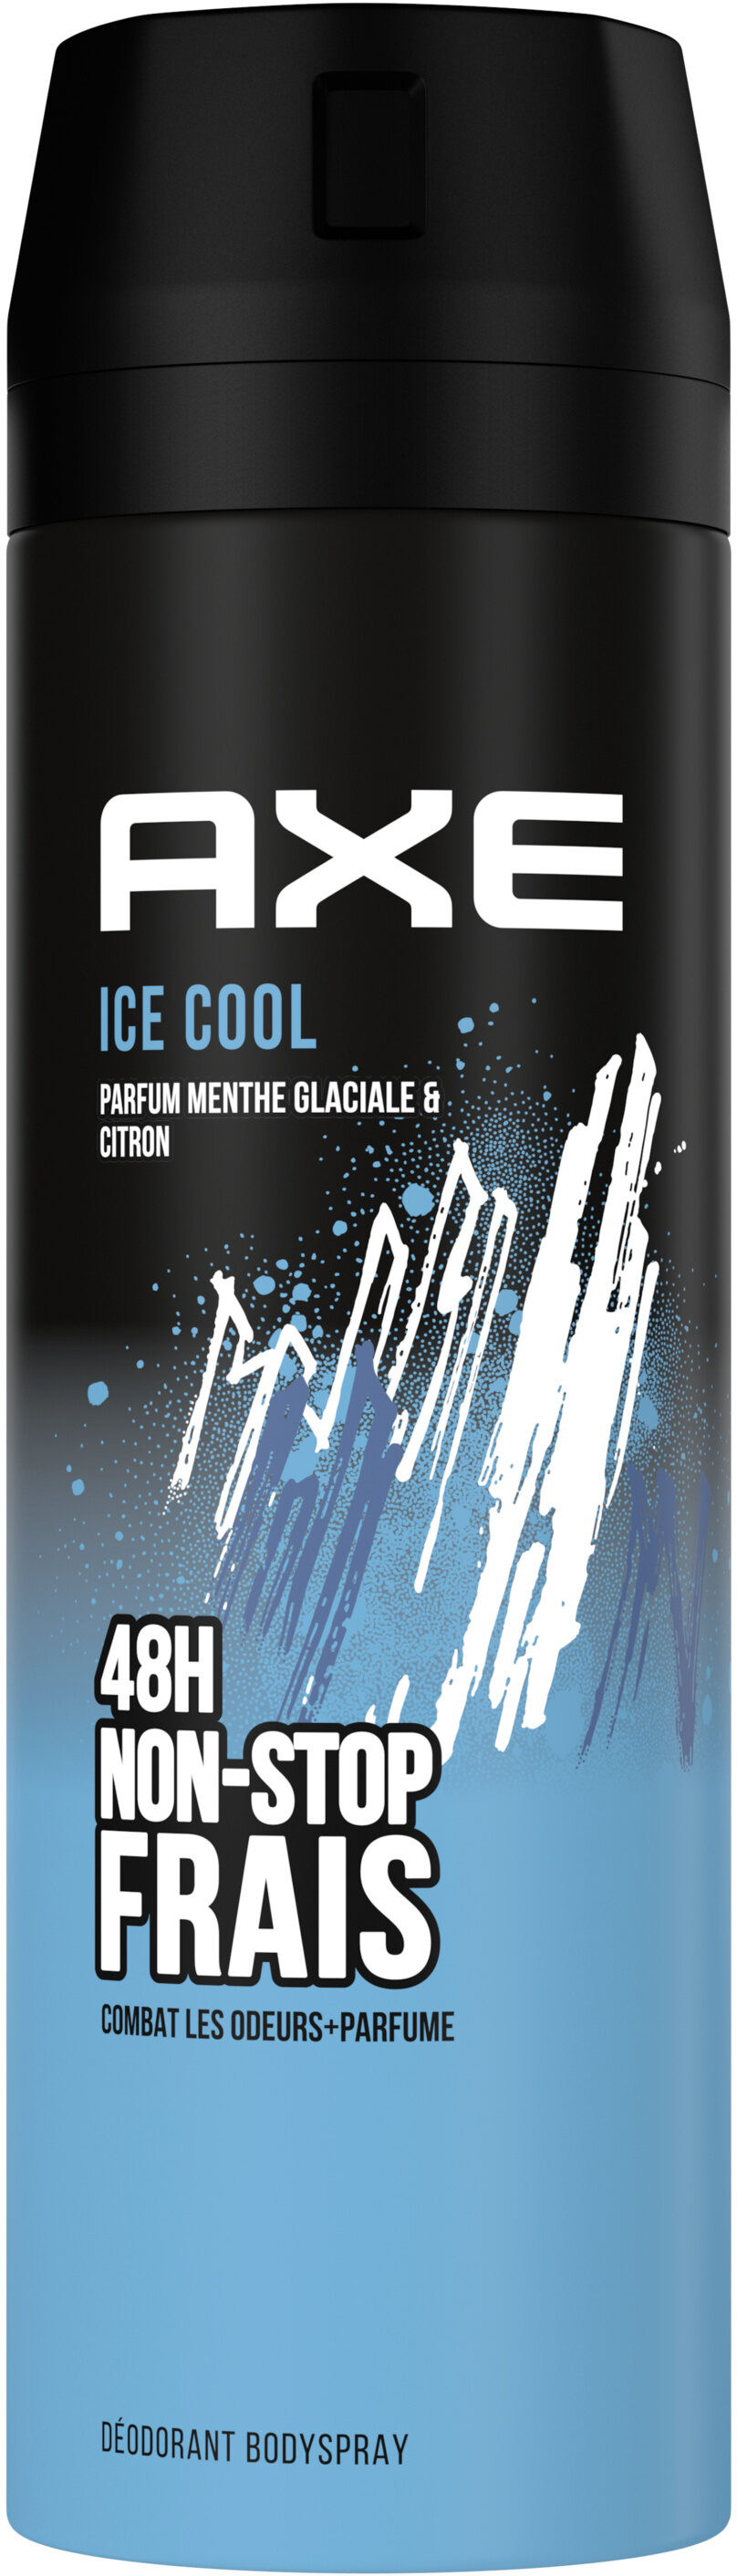 Axe Déodorant Homme Bodyspray Ice Cool 48h Non-Stop Frais 200ml - Produto - fr